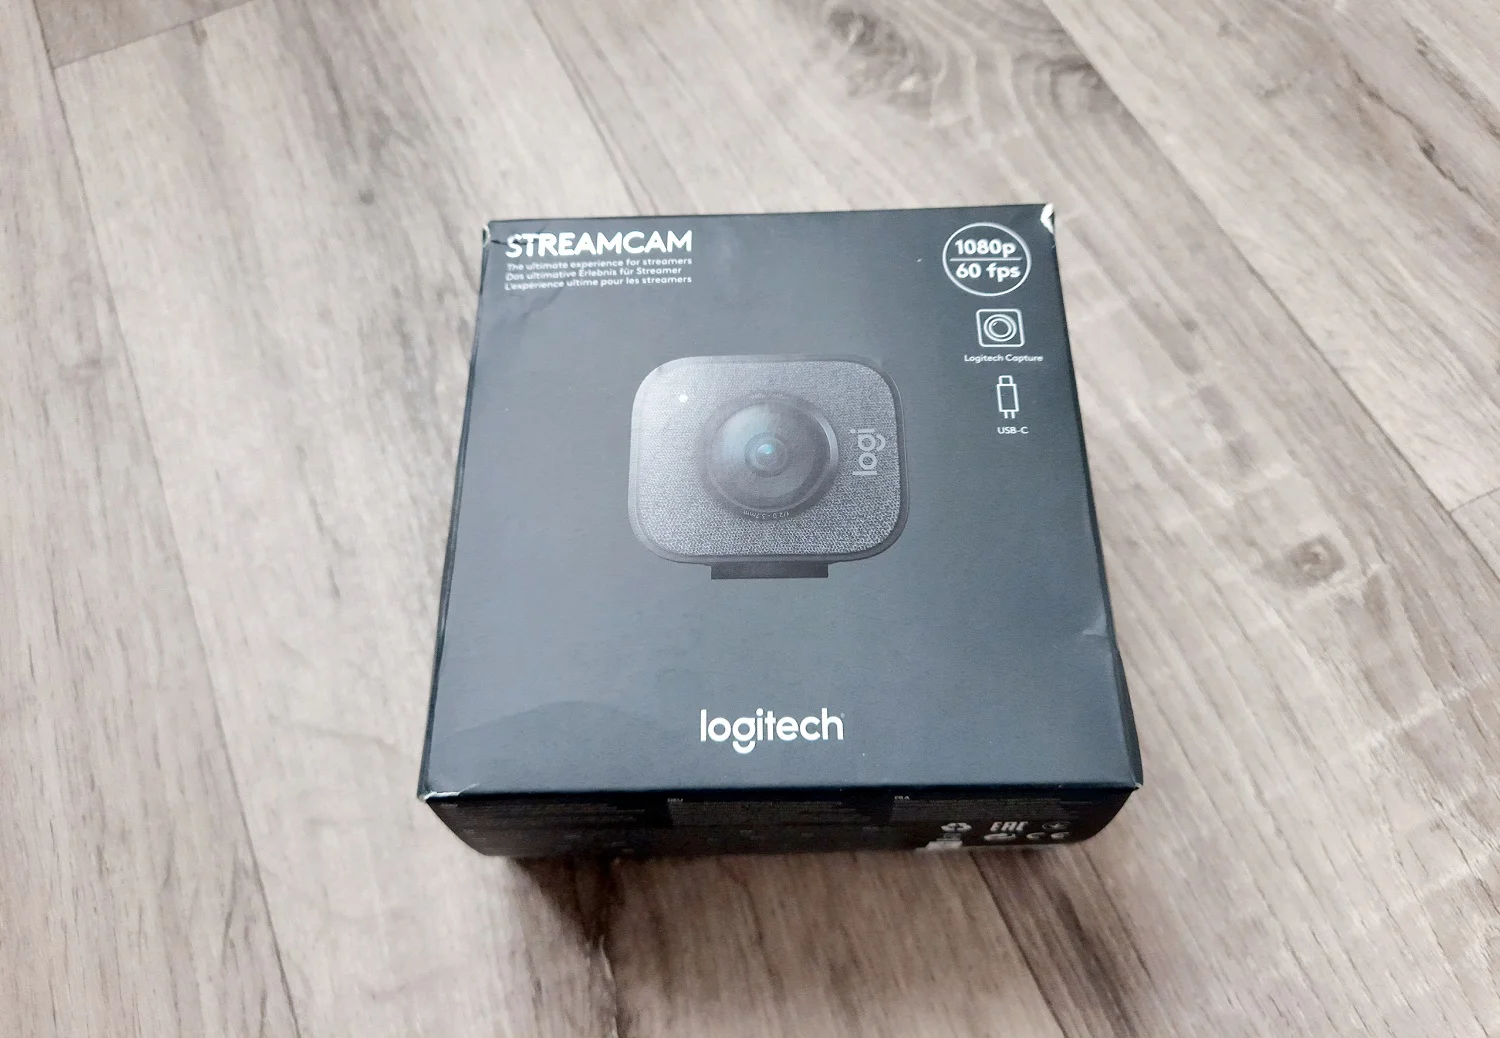 Обзор Logitech StreamCam: универсальная веб-камера для работы и развлечений - фото 1